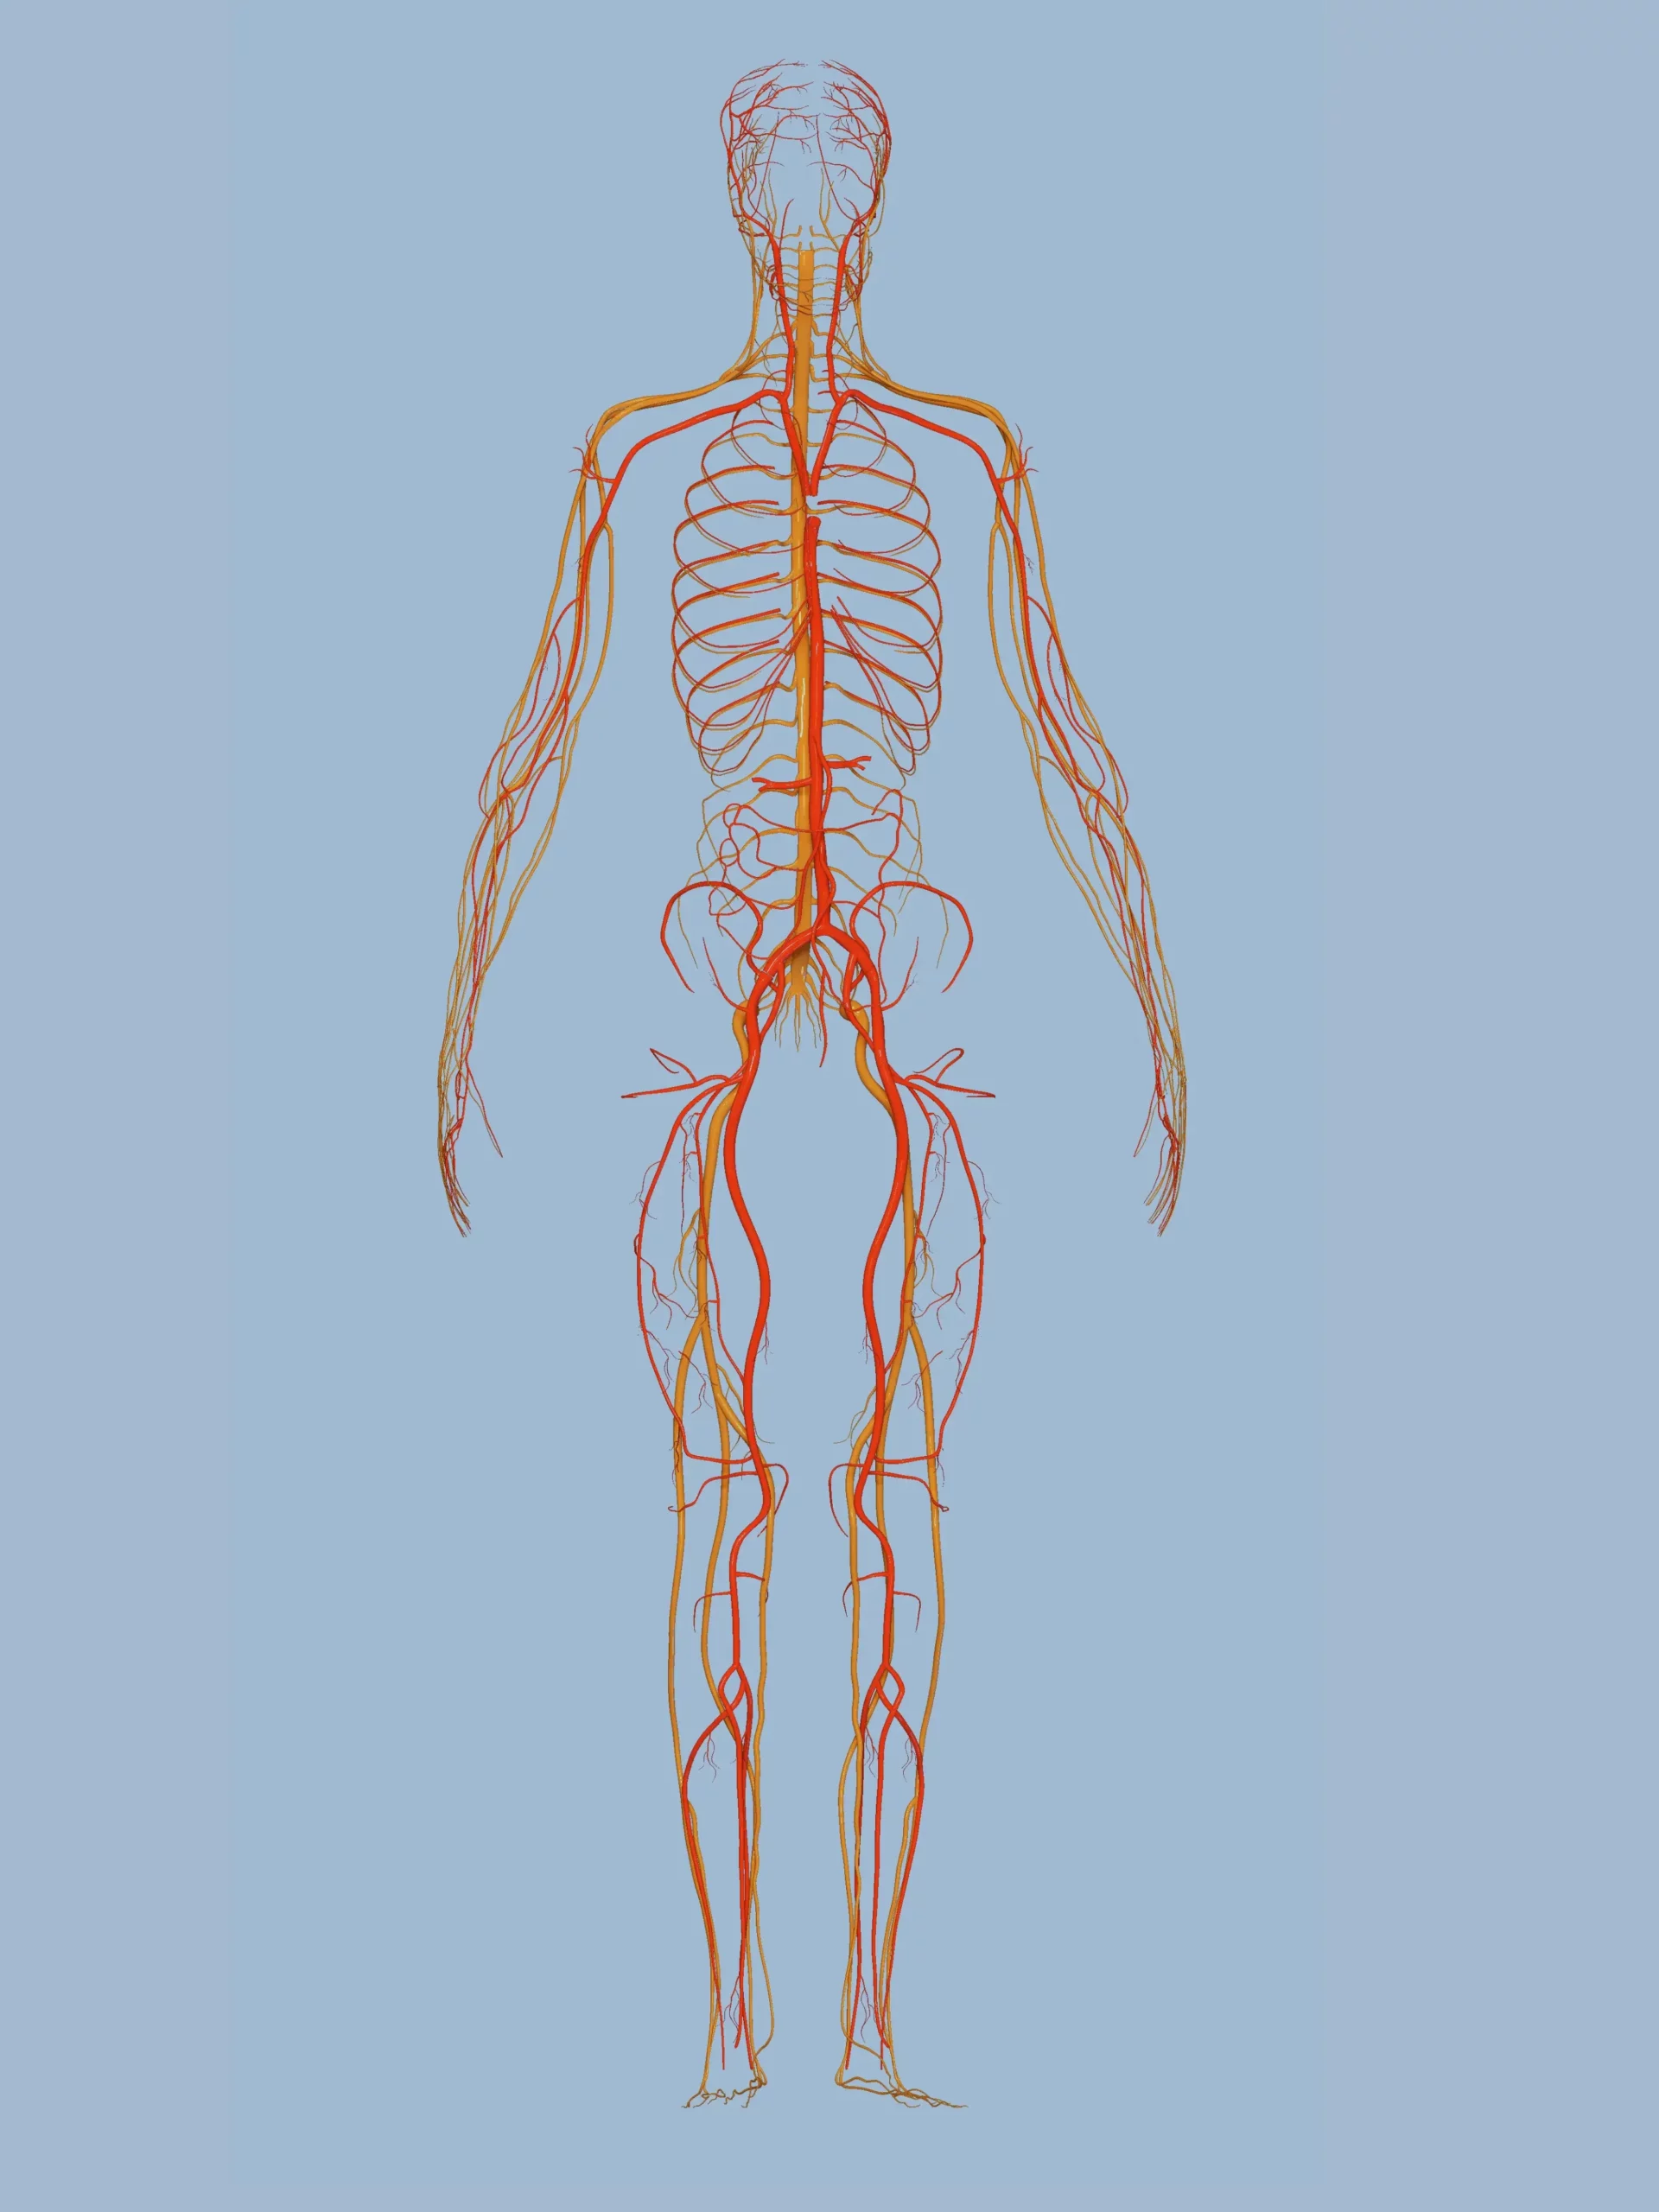 polyvagal theory on the vagus nerve